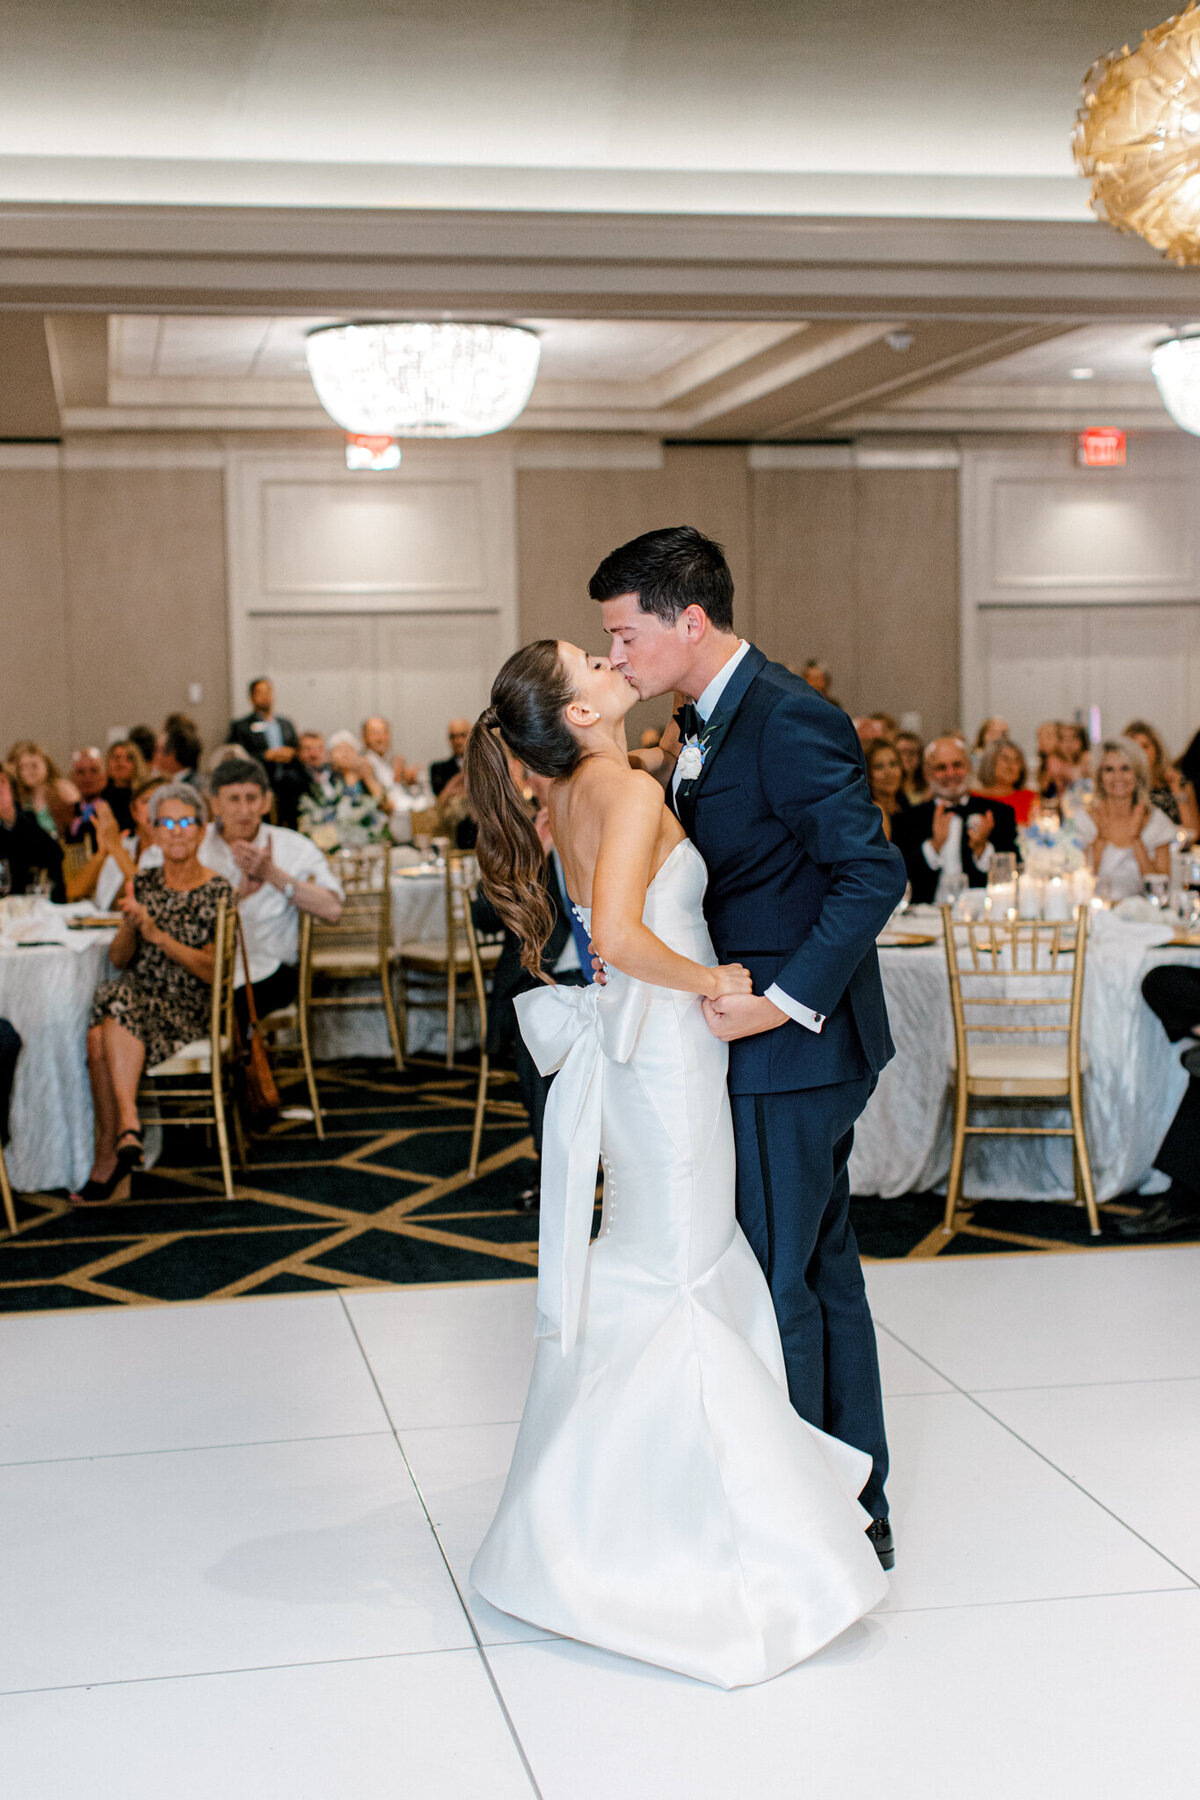 Annie & Logan's Wedding | Dallas Wedding Photographer | Sami Kathryn Photography-209